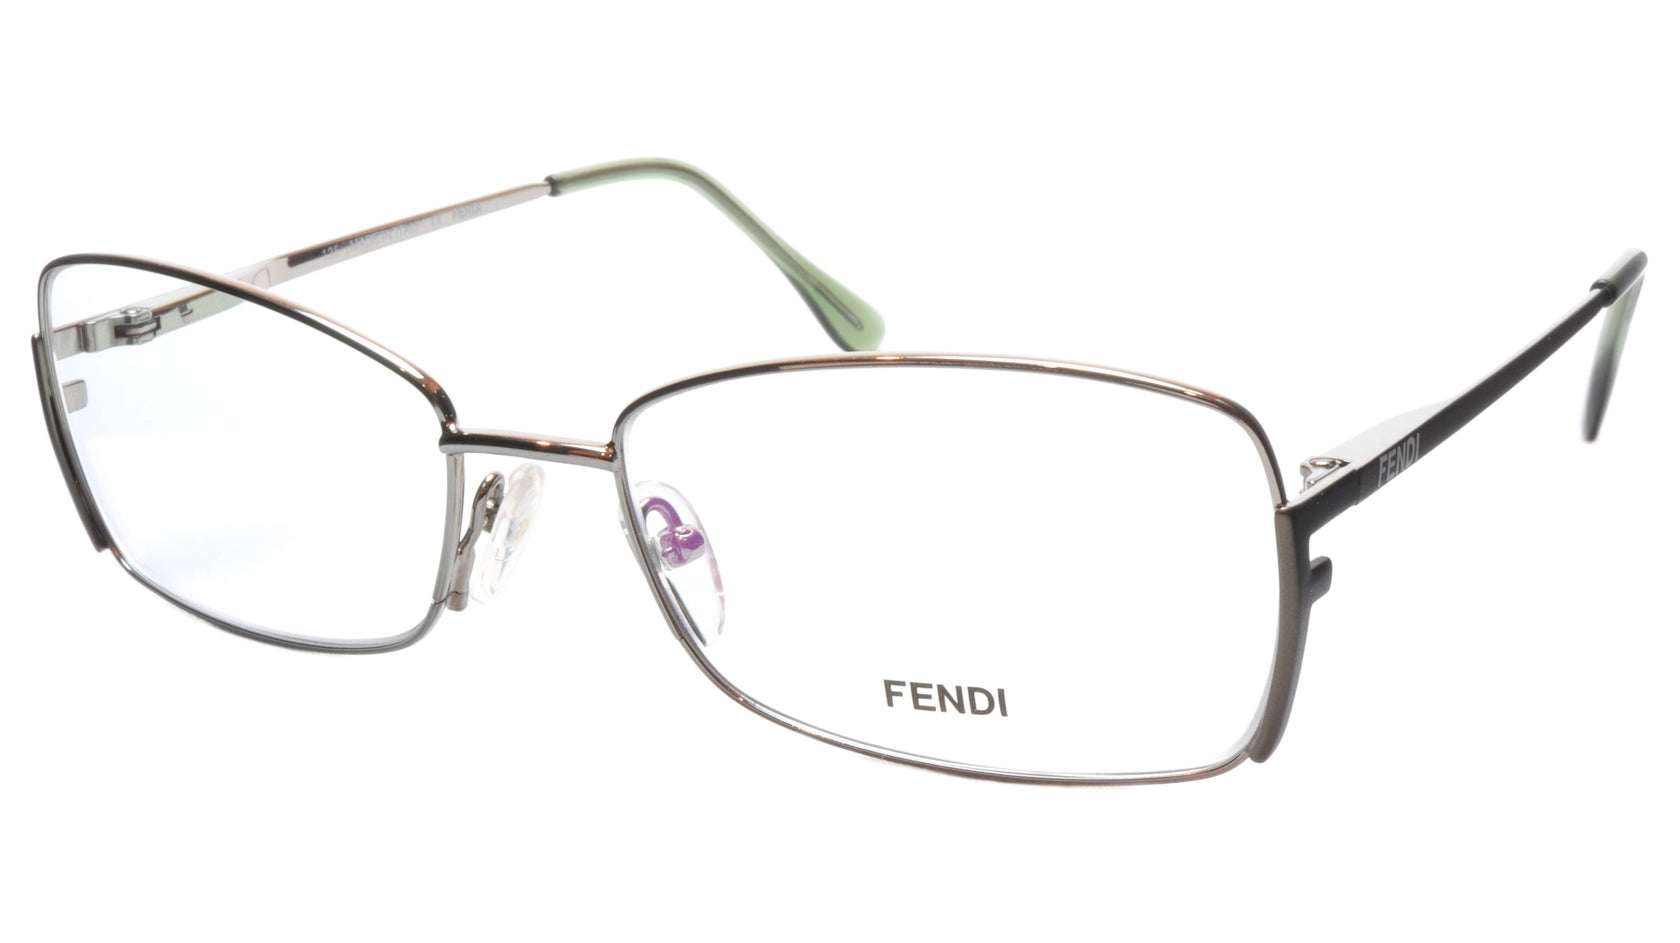 FENDI Eyeglasses Frame F959 (756) Metal Golden Sage Italy Made 54-16-1 ...